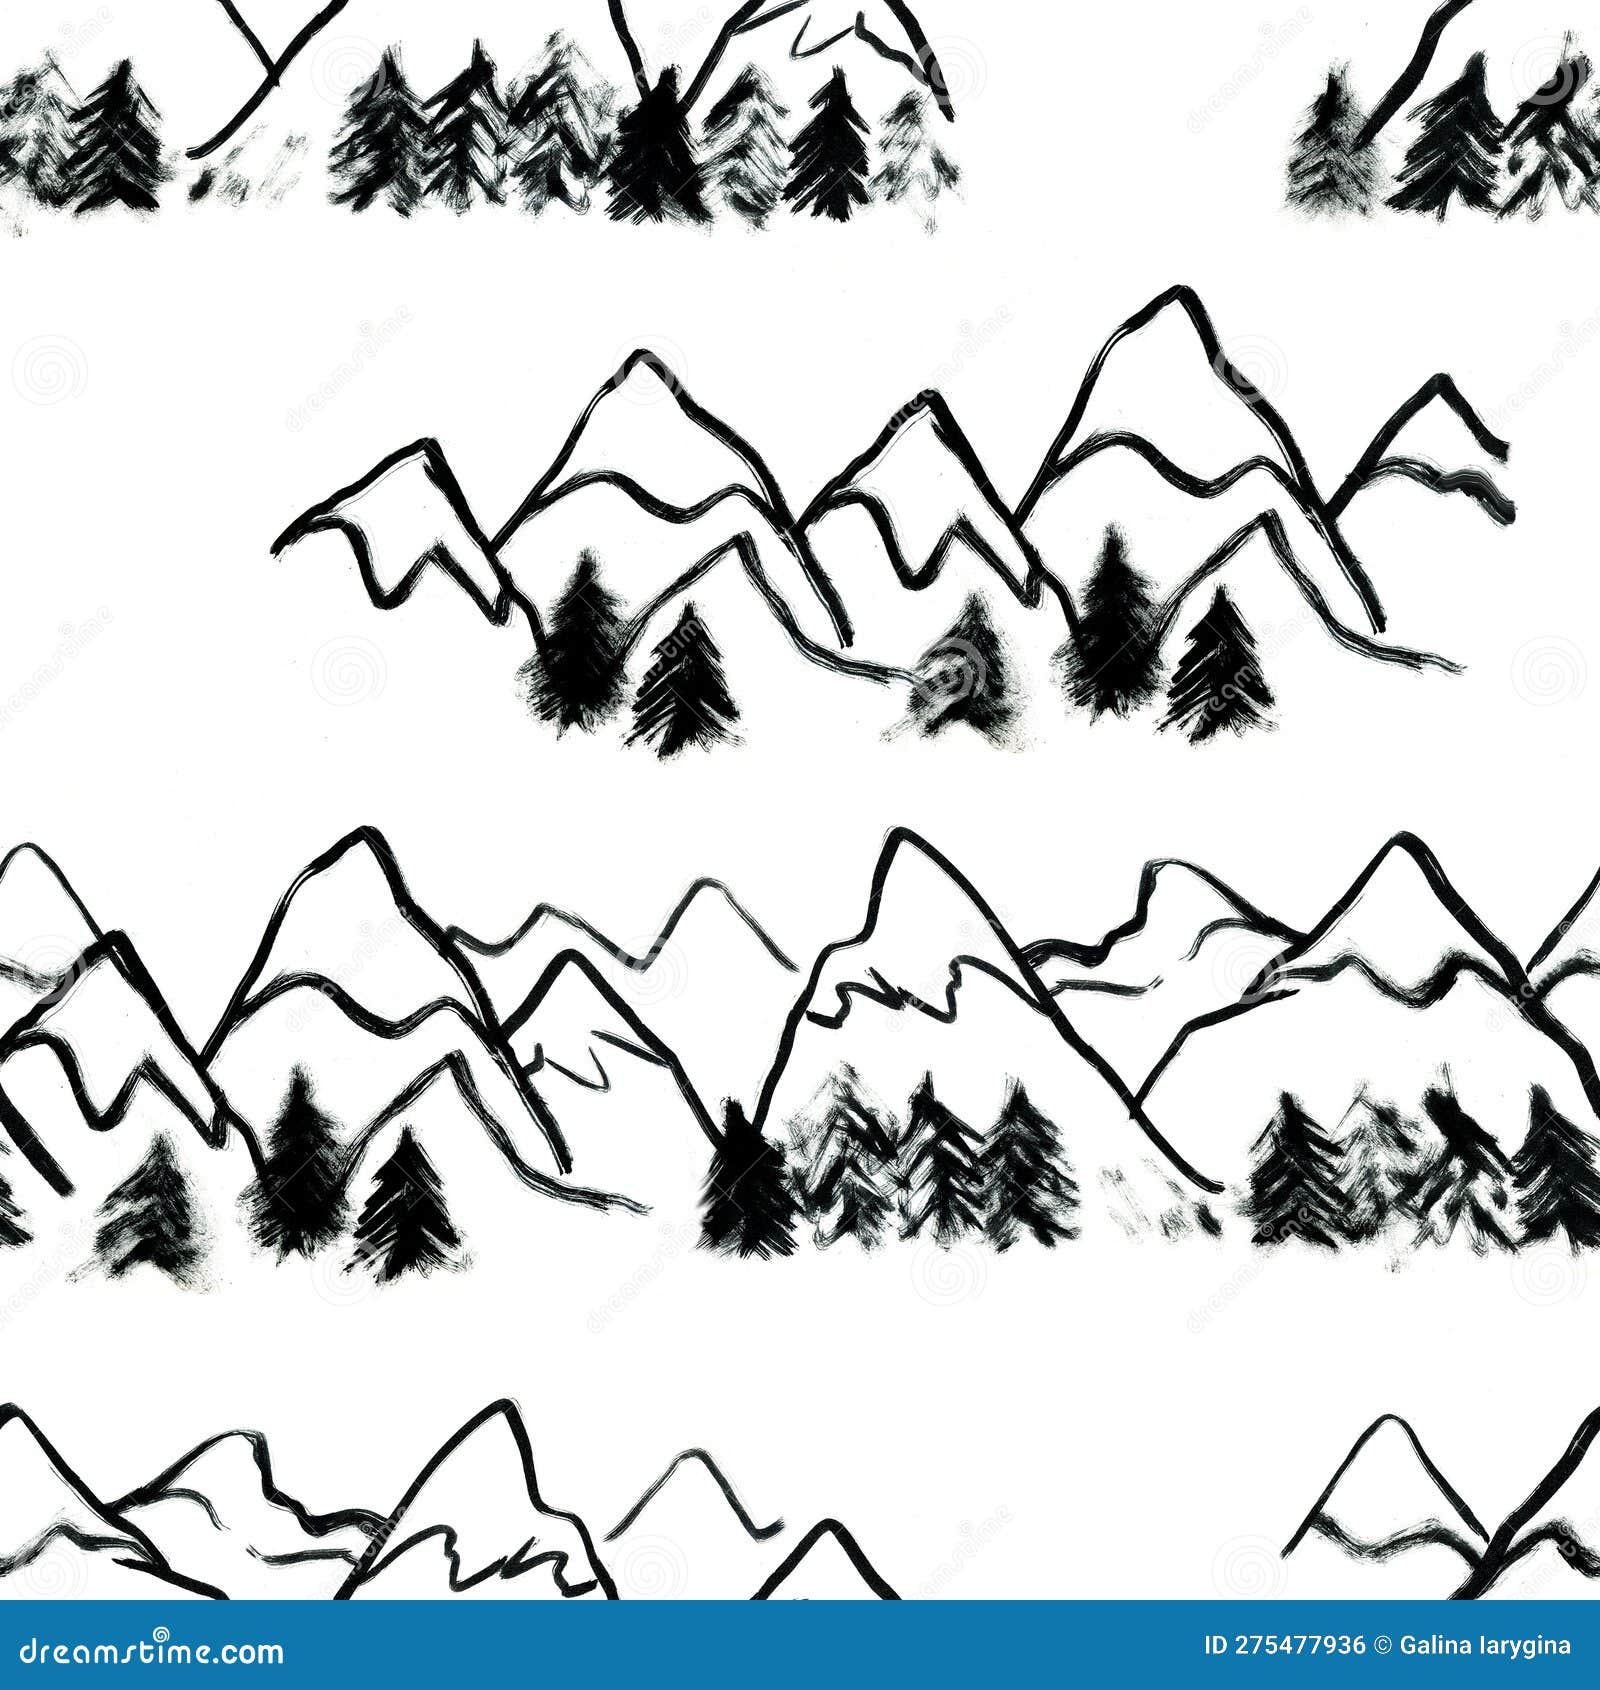 Mountain Sketch Art by IdoThingsIswear on DeviantArt